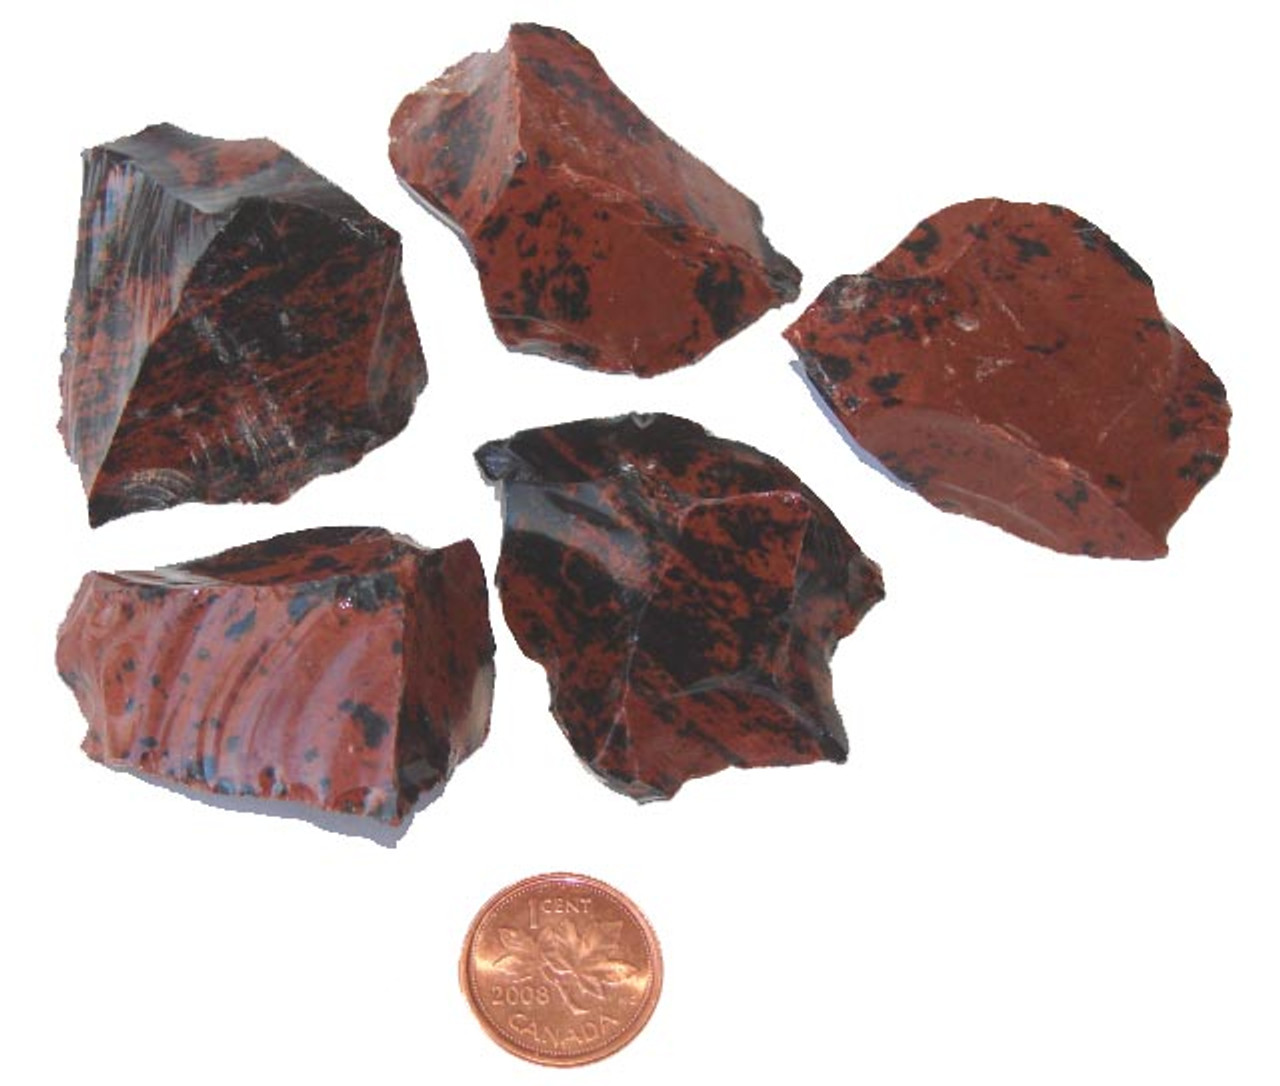 mahogany obsidian meaning